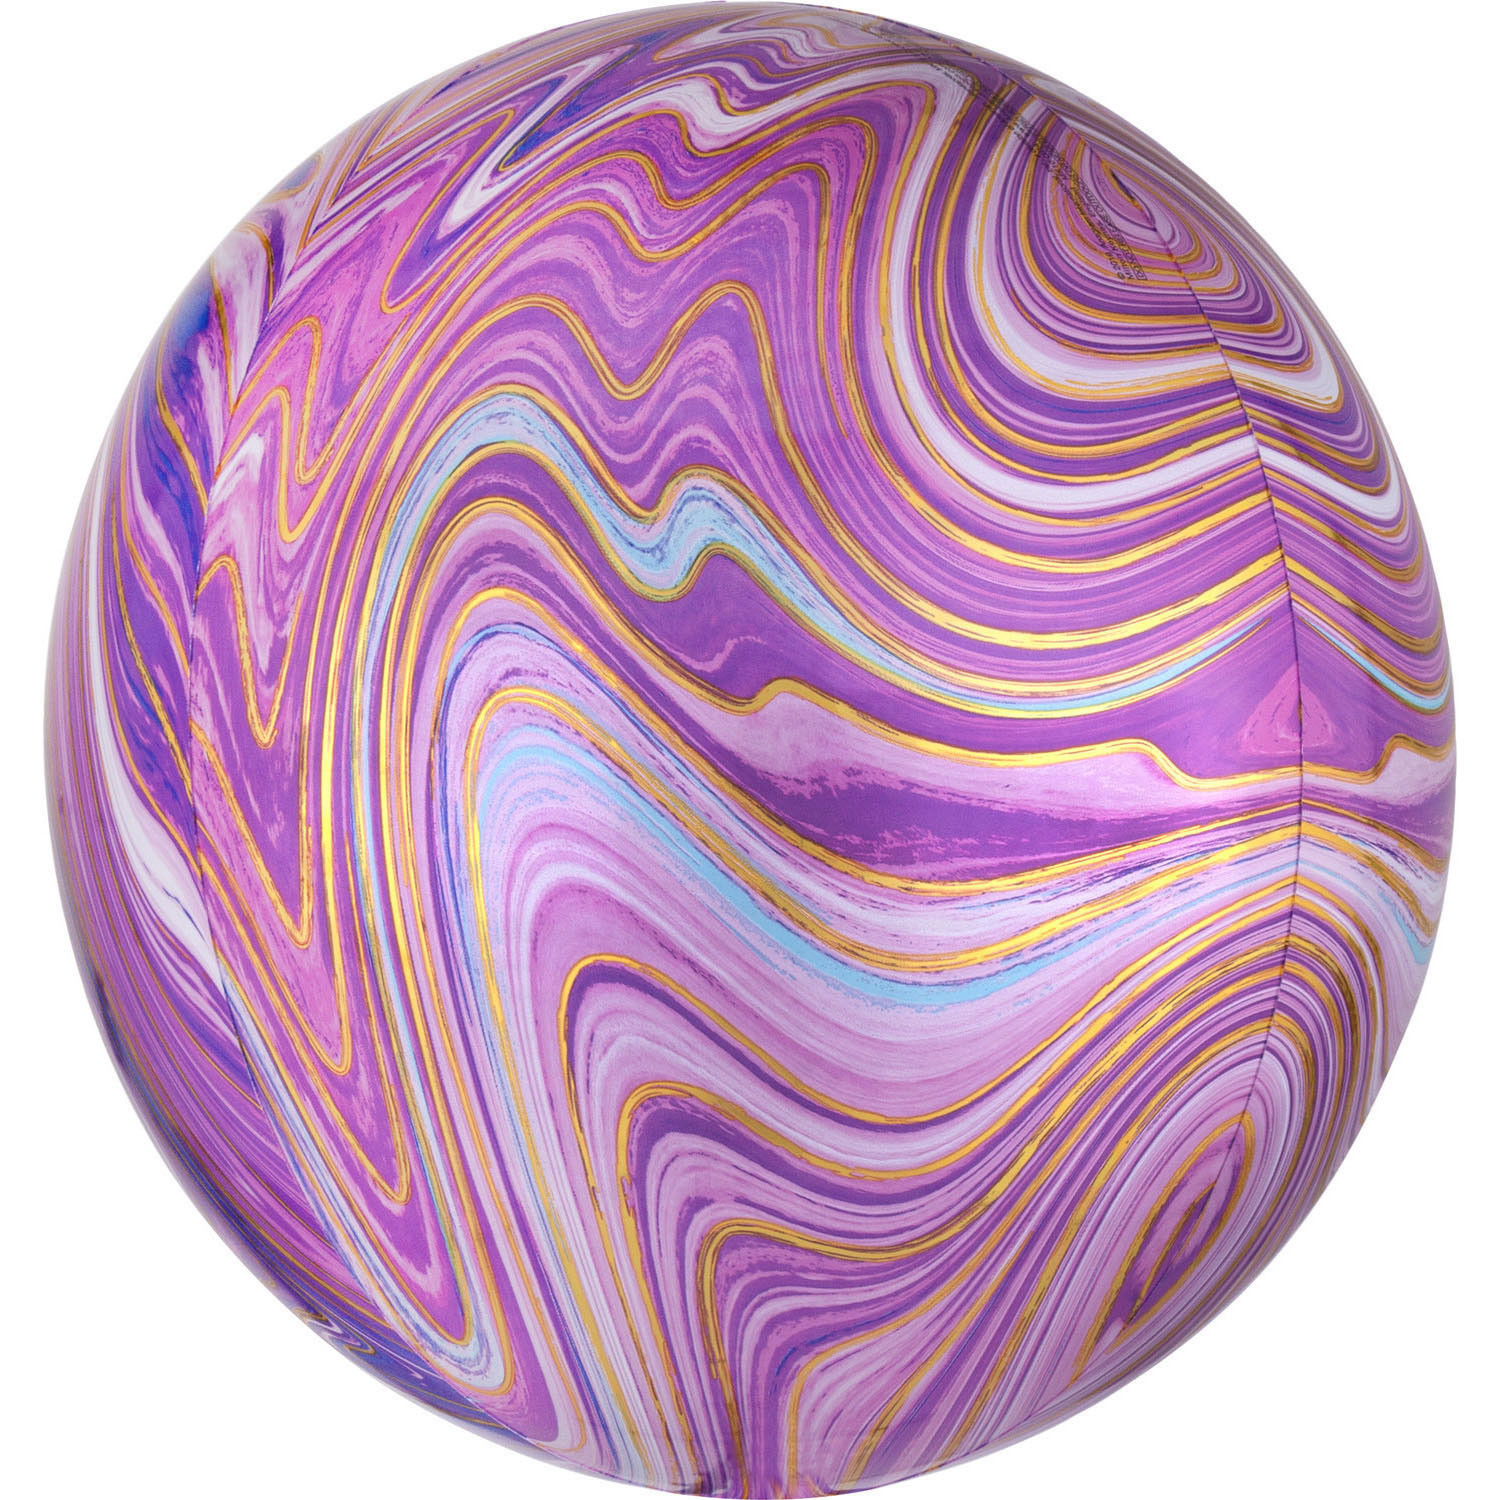 Balon foliowy Orbz - Kula Marble fioletowa / 38x40 cm